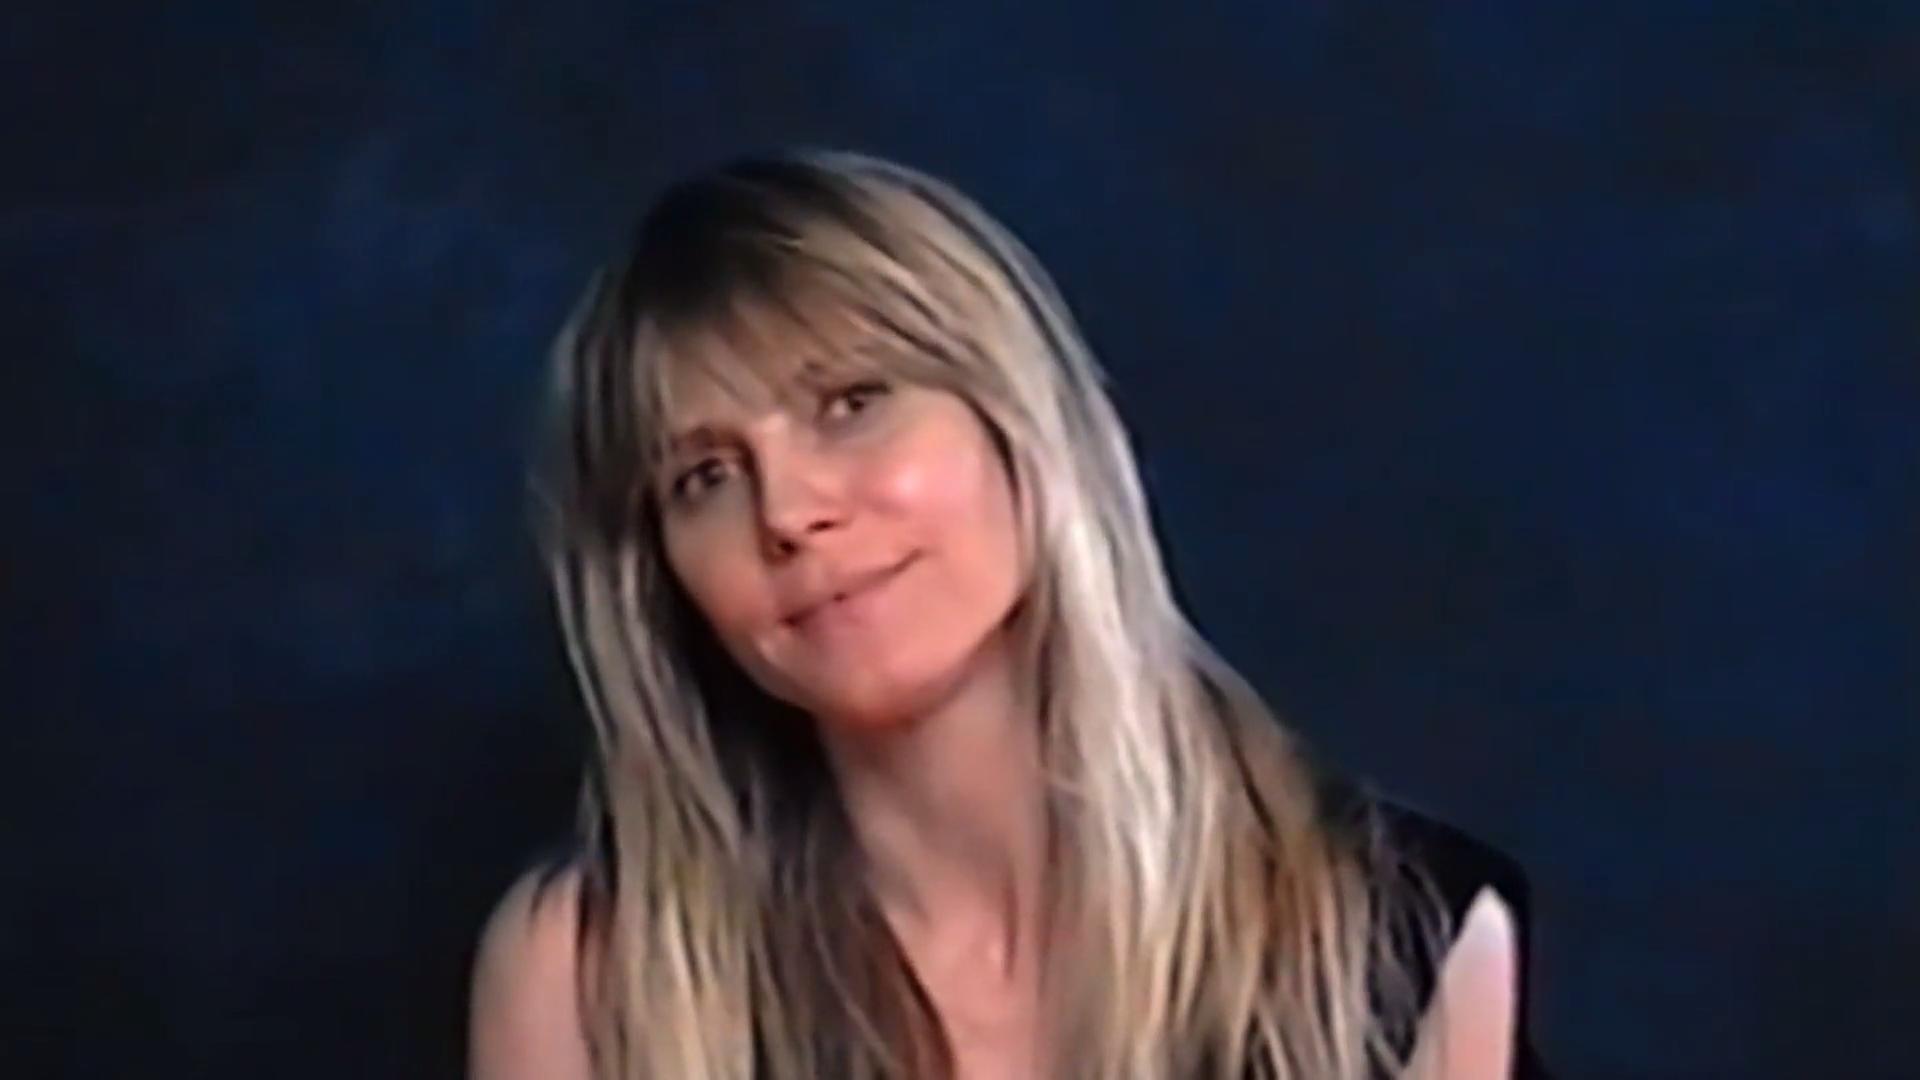 Heidi Klum: So ist der Sex mit Tom Offene Worte im "Chateau"-Video